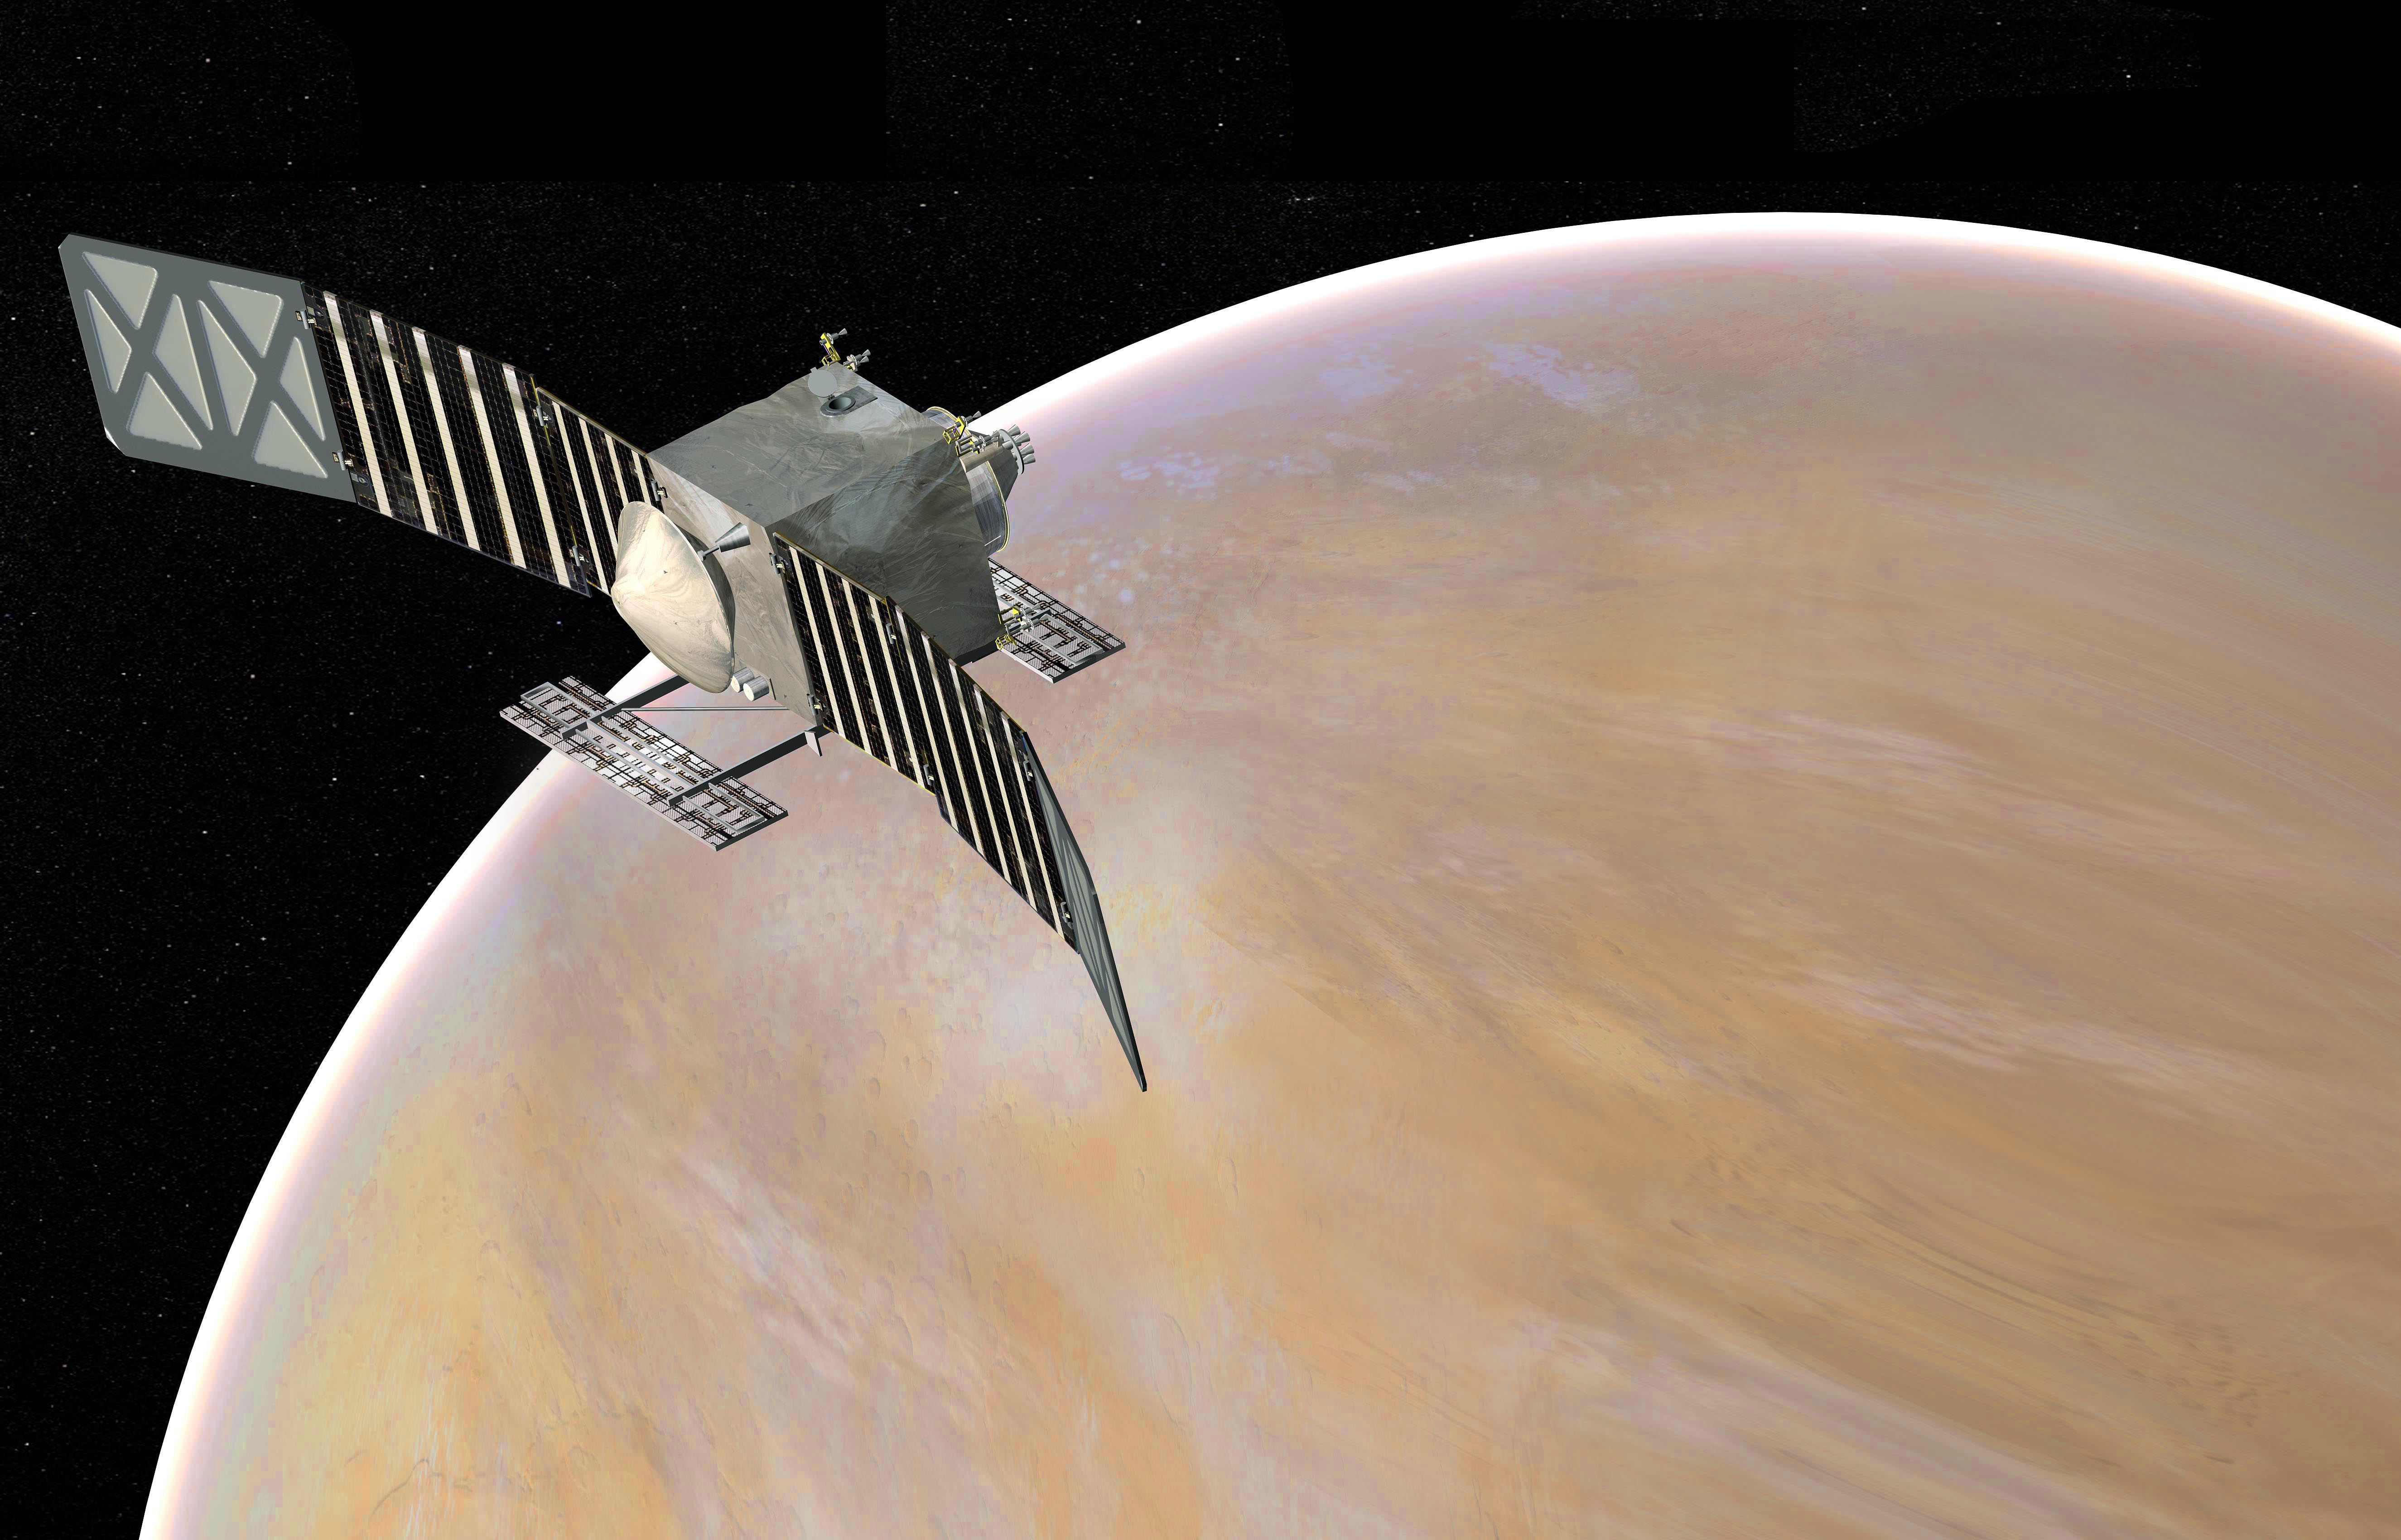 Could NASA go to Venus?